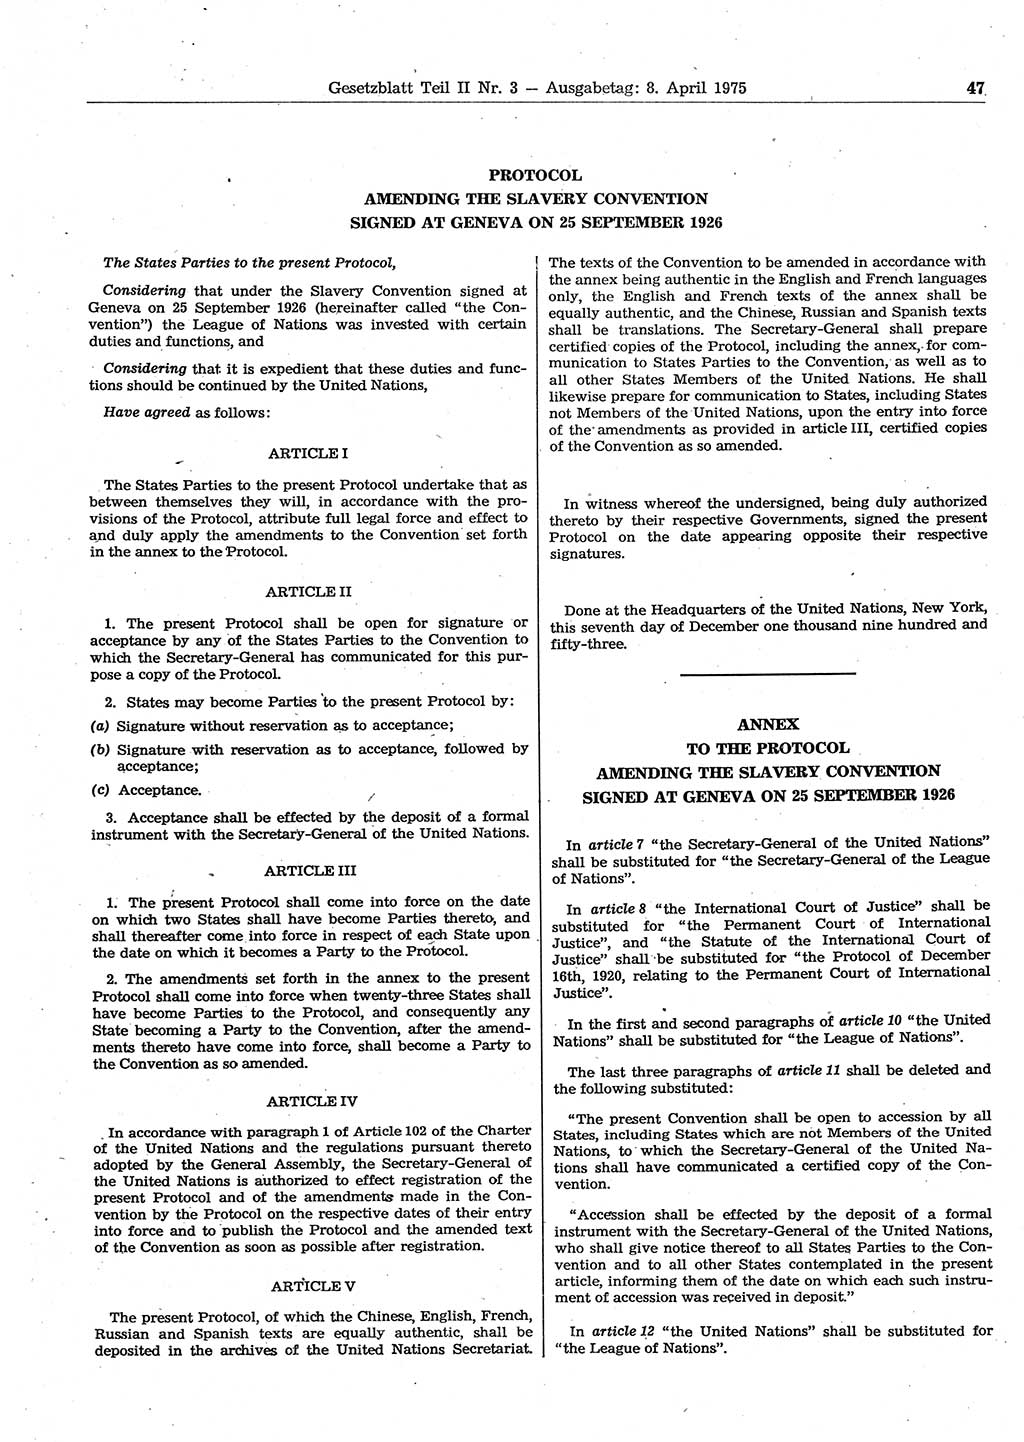 Gesetzblatt (GBl.) der Deutschen Demokratischen Republik (DDR) Teil ⅠⅠ 1975, Seite 47 (GBl. DDR ⅠⅠ 1975, S. 47)